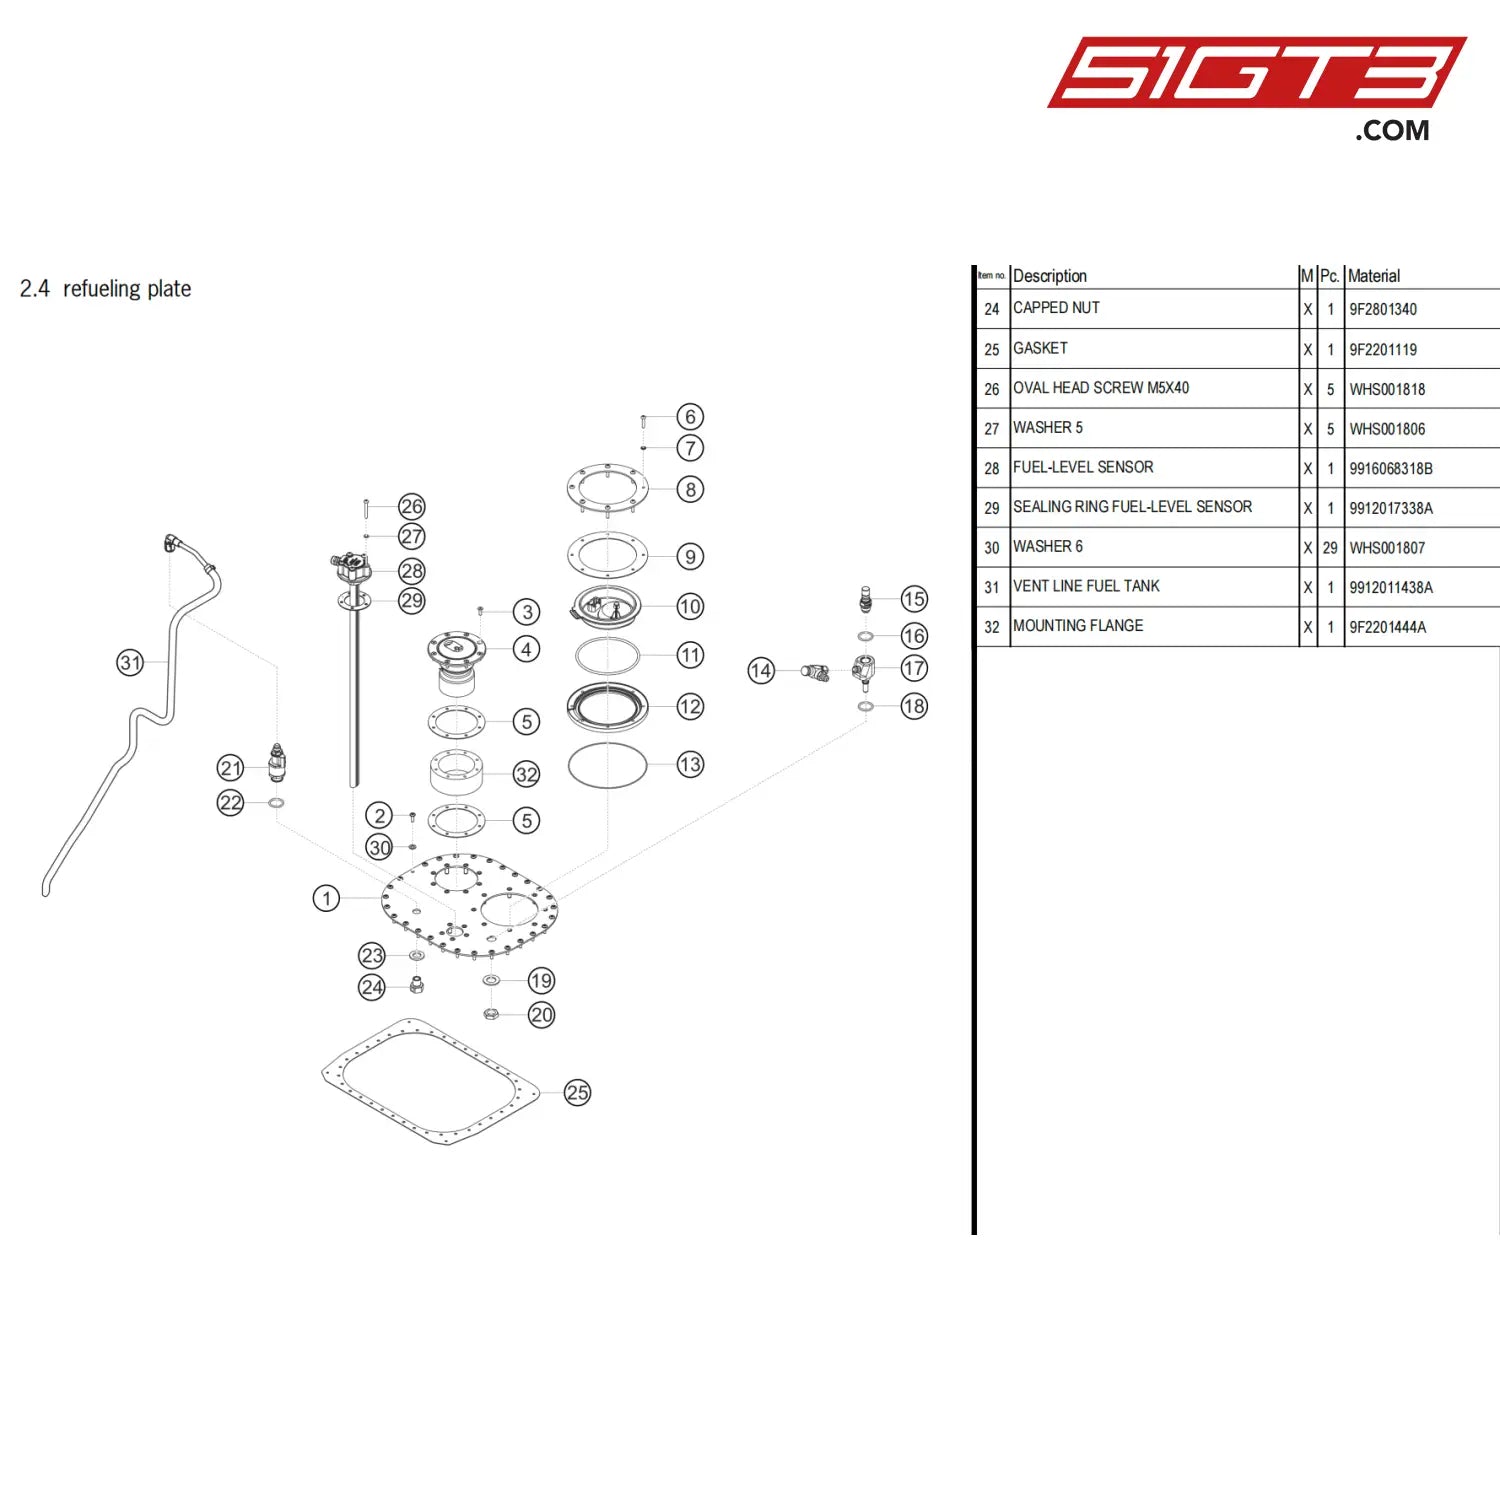 Fuel-Level Sensor - 9916068318B [Porsche 718 Cayman Gt4 Clubsport] Refueling Plate